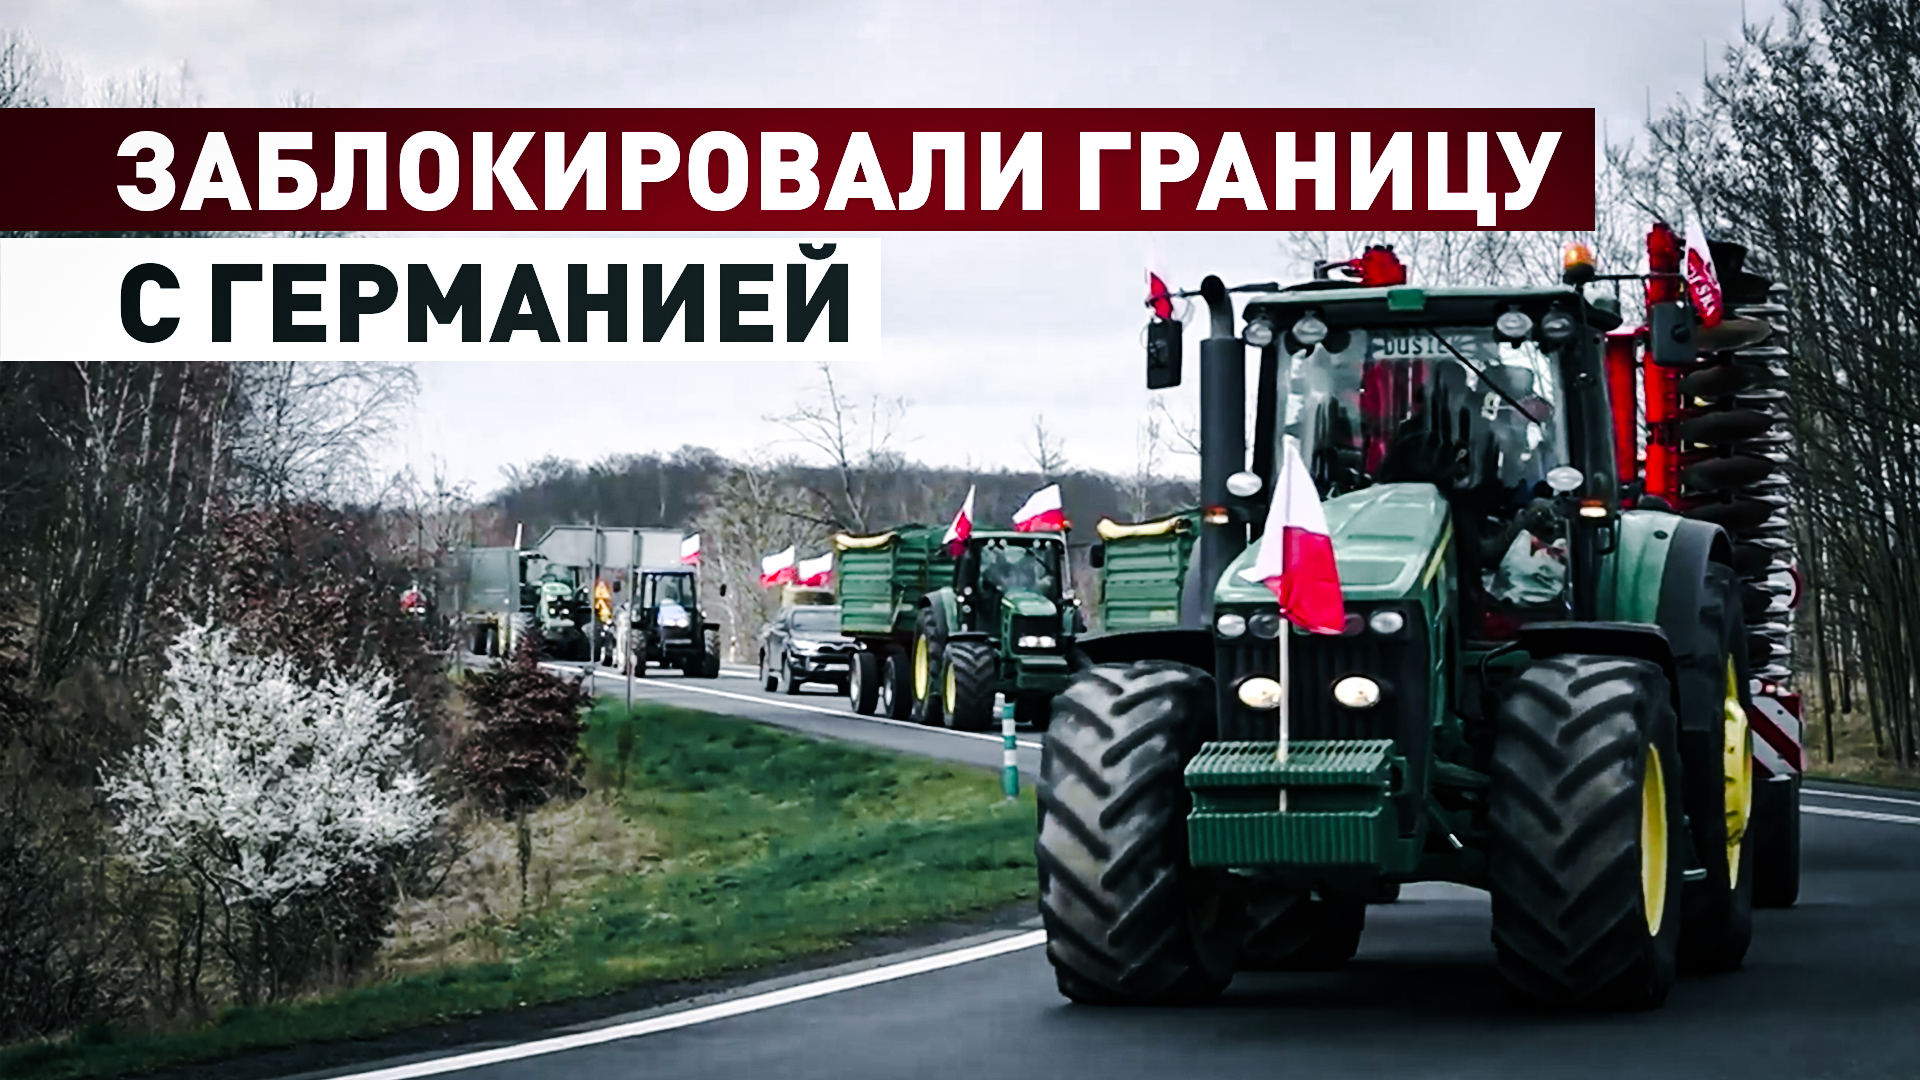 Против сельхозпродукции с Украины: польские фермеры заблокировали дороги на границе с ФРГ